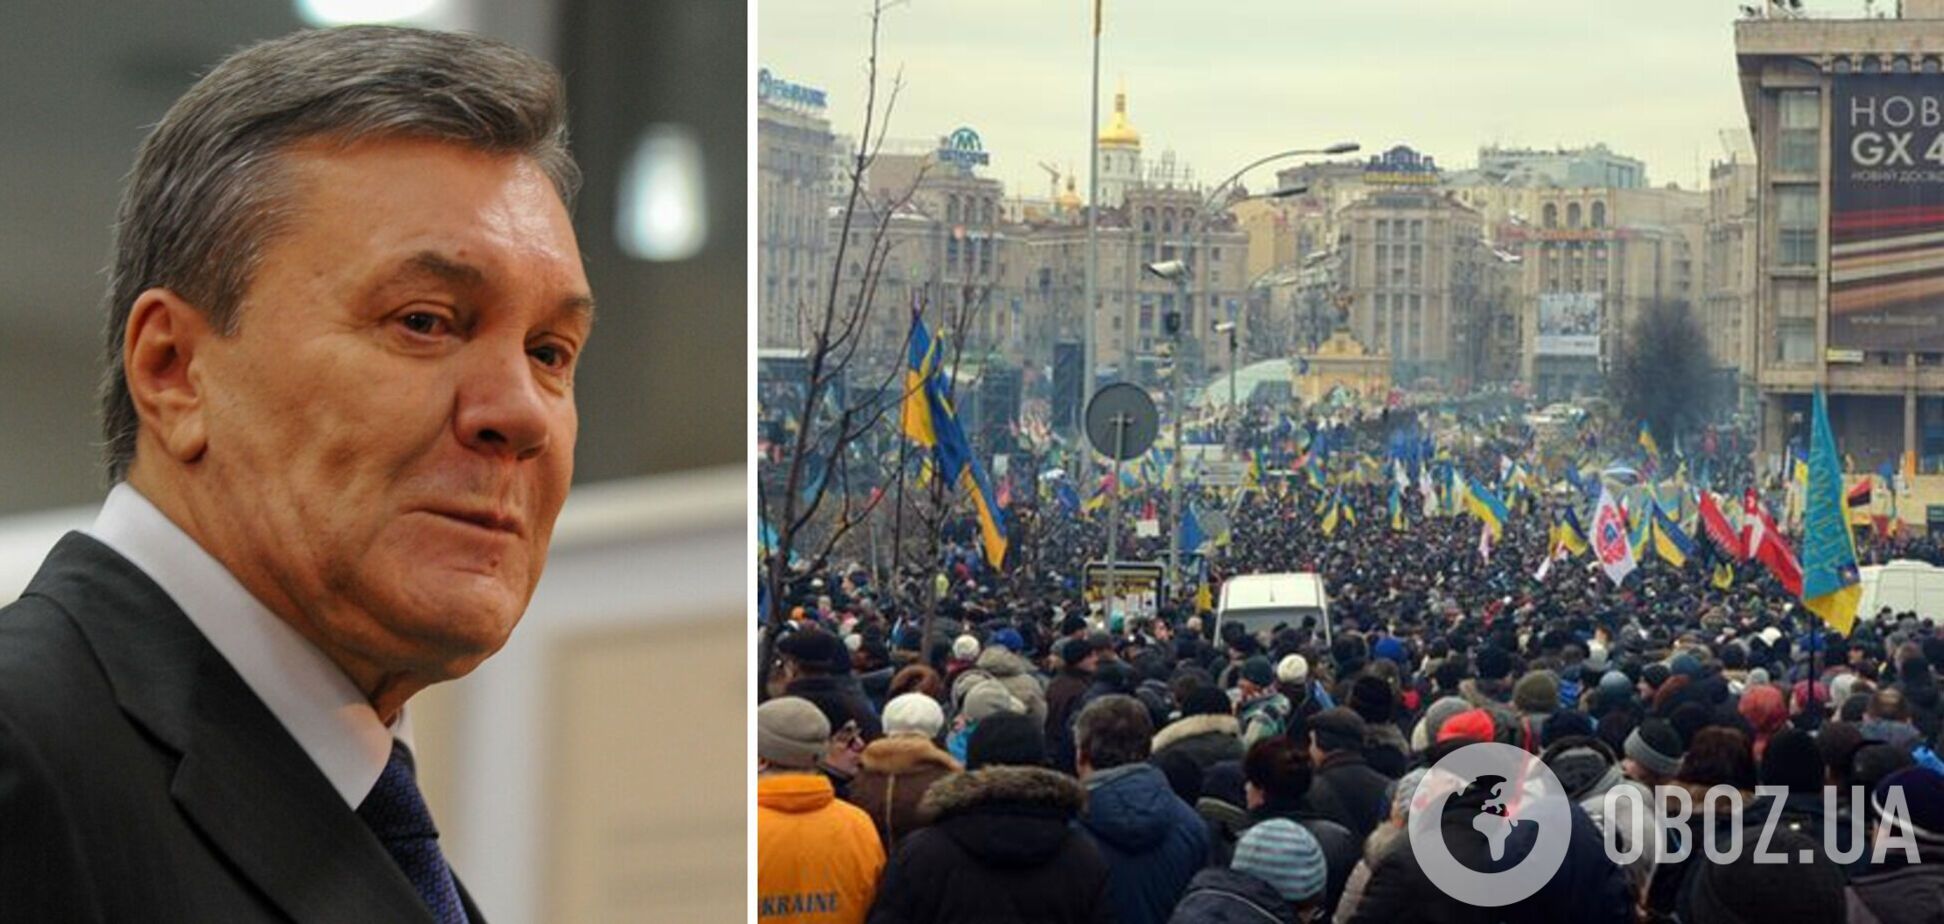 Янукович в постановочной статье обвинил Майдан-2014 в войне в Украине и рассказал о 'личной драме'